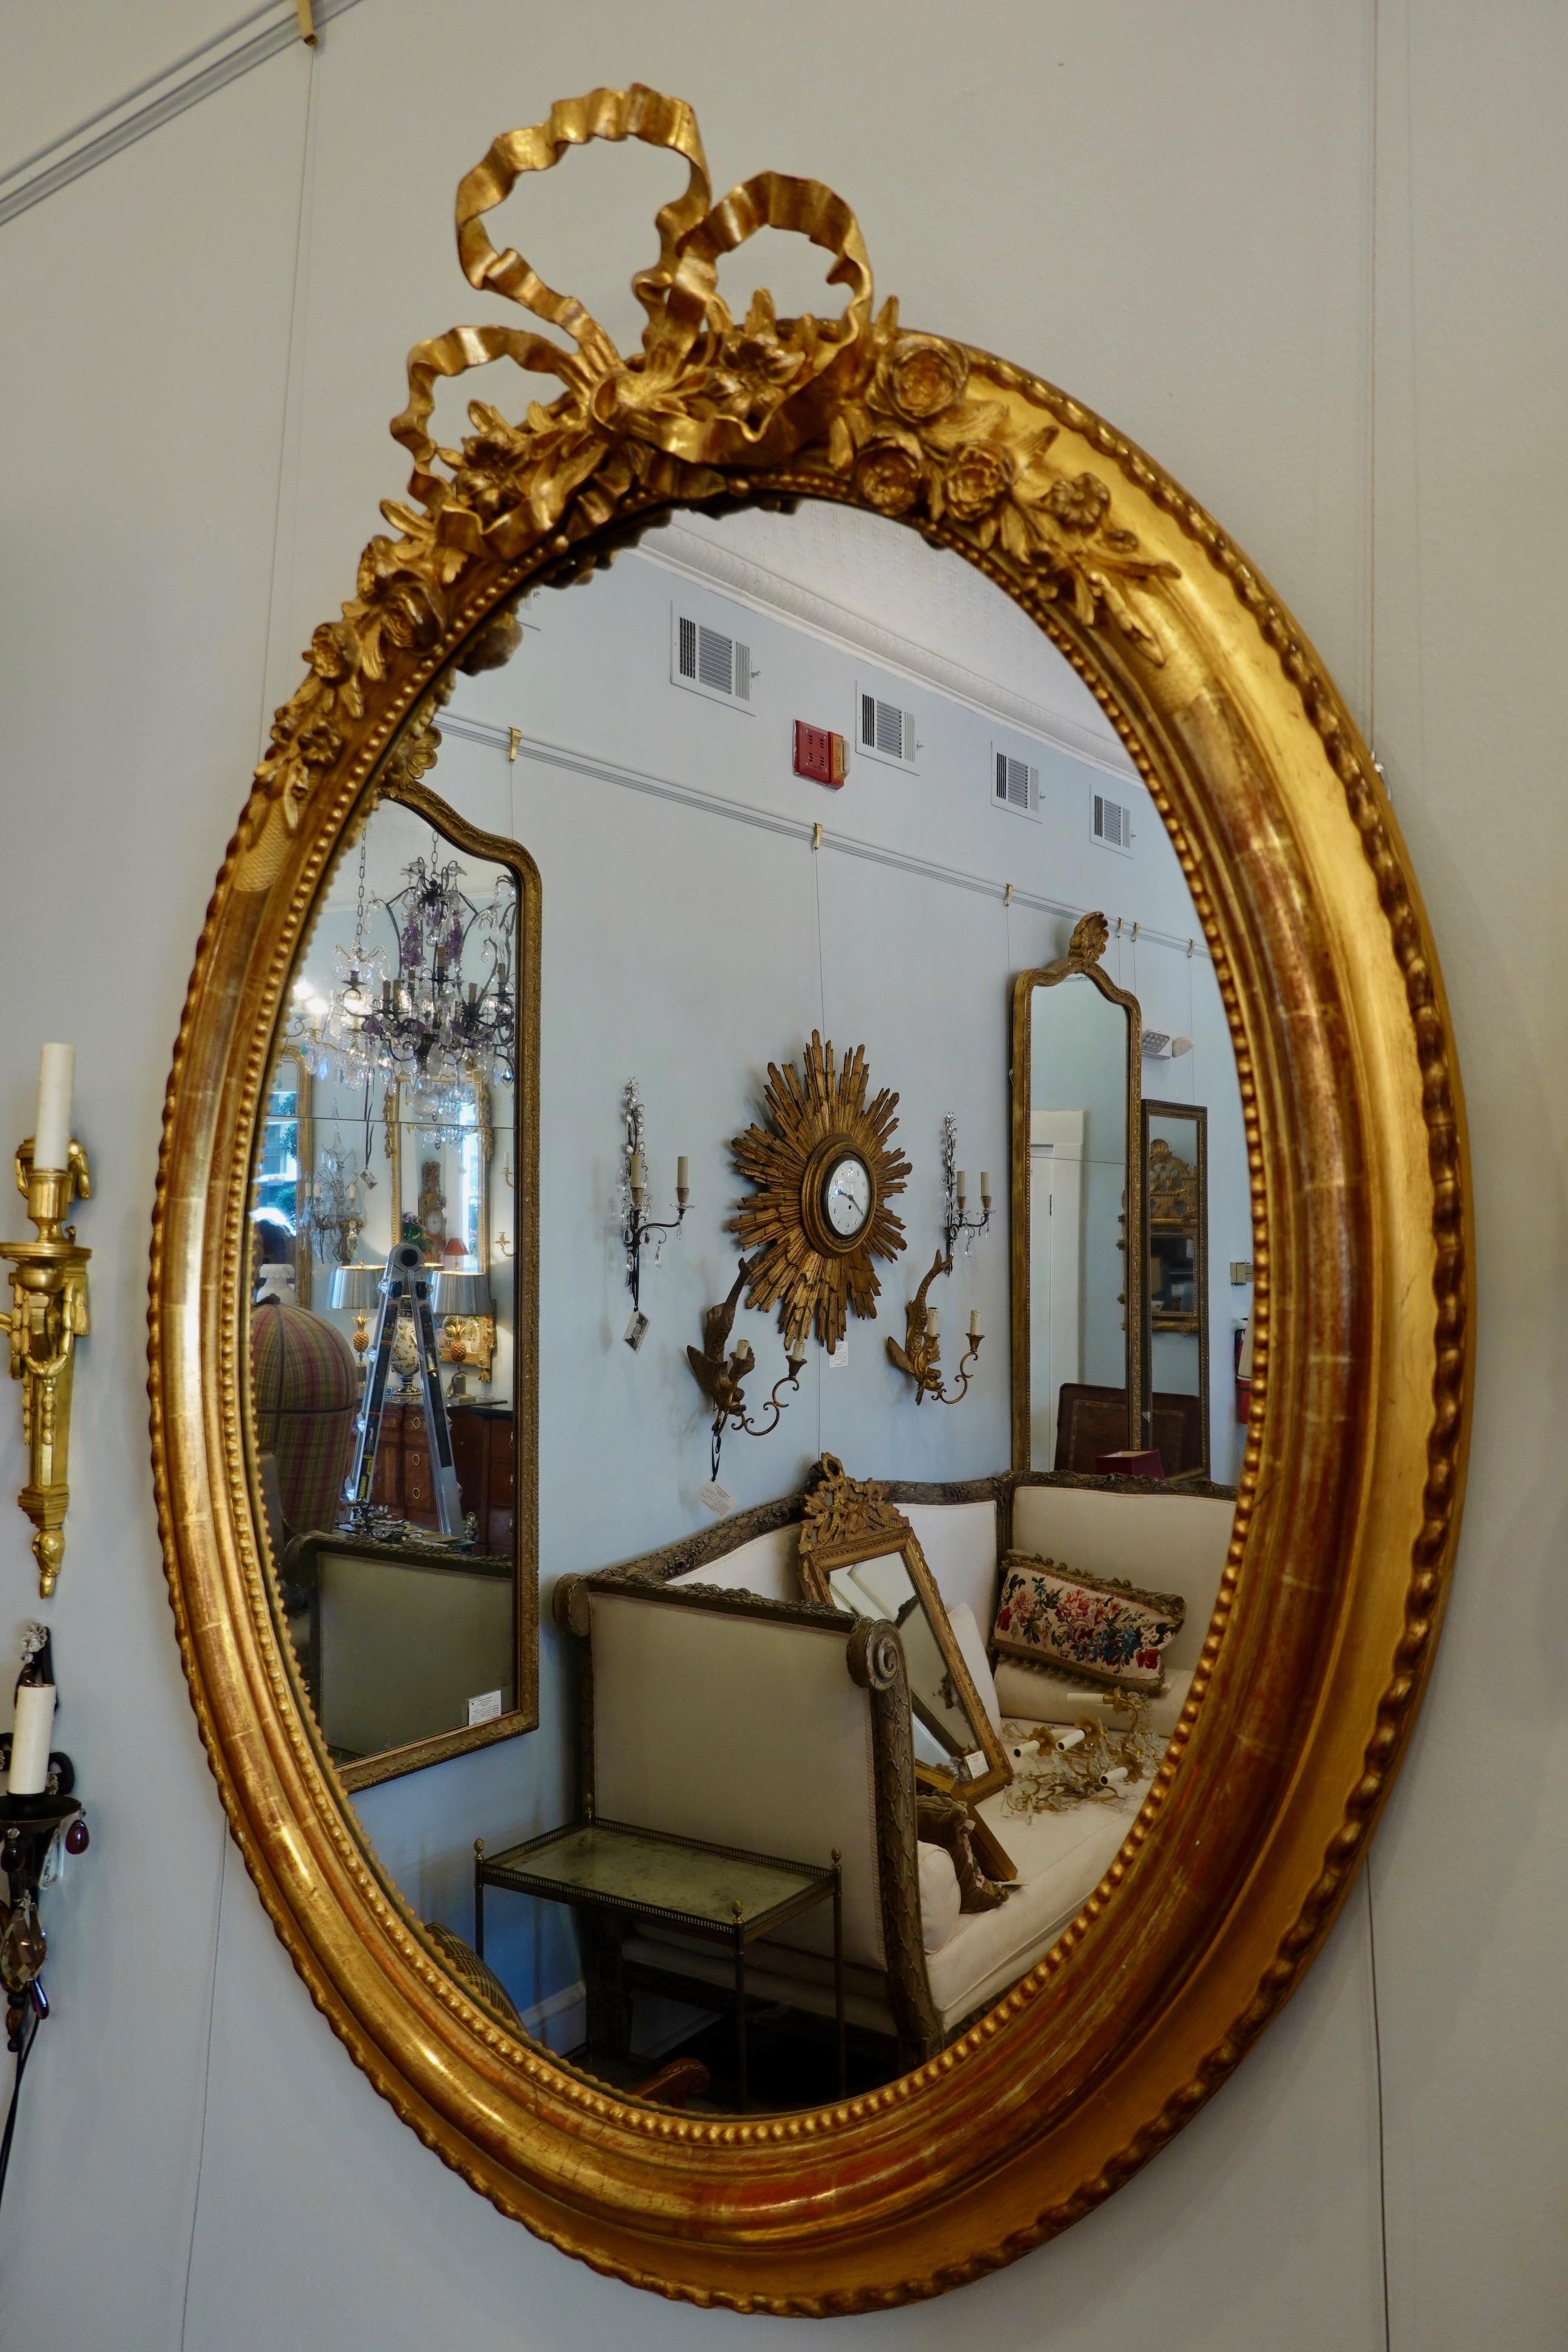 Miroir ovale en bois doré de style Louis XVI français avec un grand cartouche en arc finement sculpté et flanqué de roses (vers 1830). Le cadre profondément moulé comporte des perles sur le périmètre intérieur et des moulures torsadées à